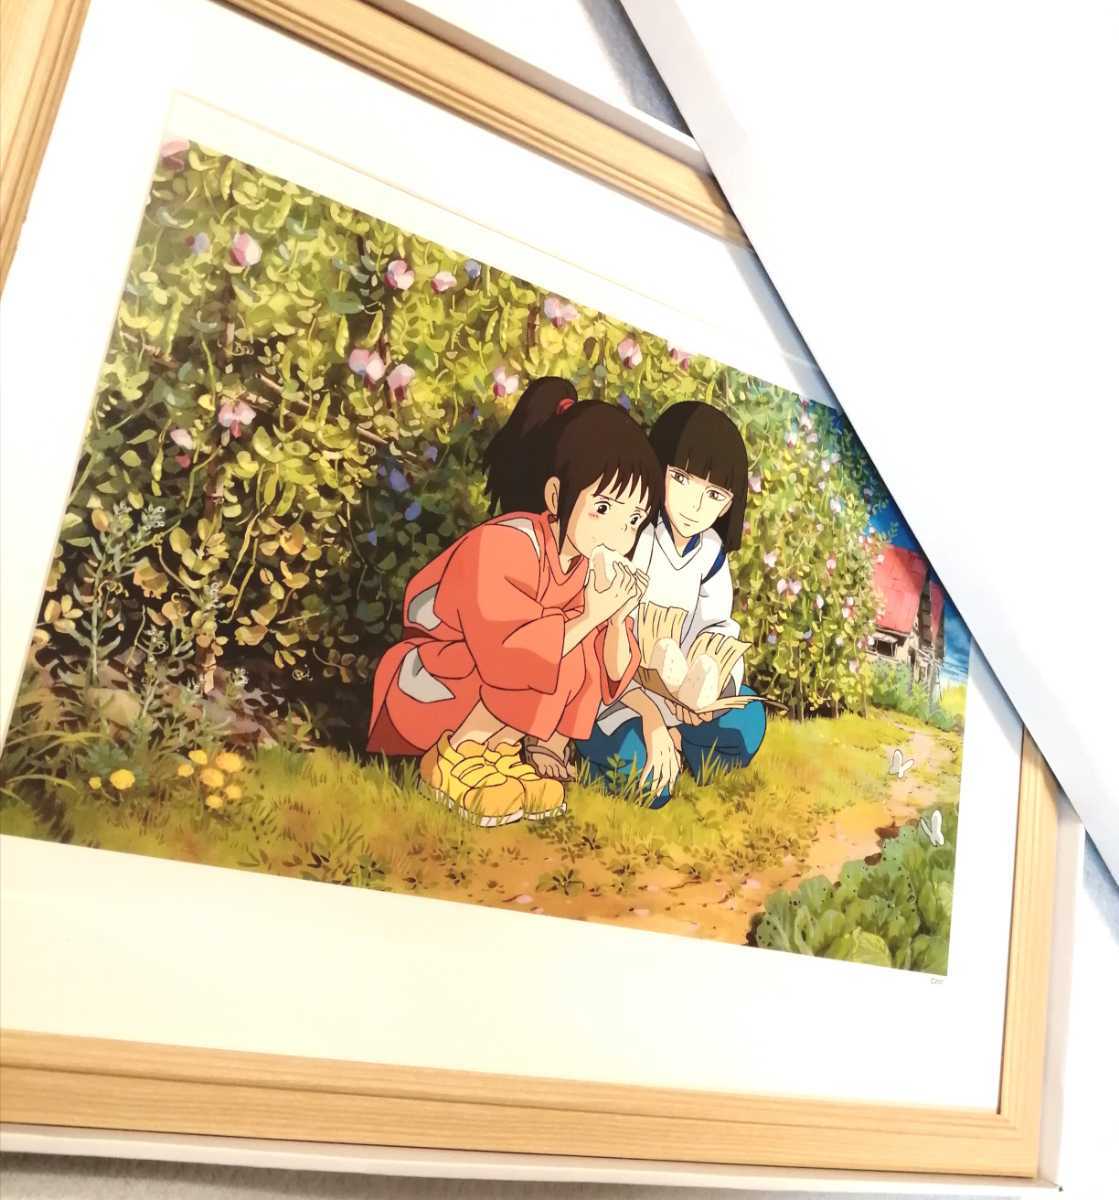 نادر جدا! Studio Ghibli Spirited Away [عنصر مؤطر] ملصق Ghibli, لوحة جيبلي, الاستنساخ الأصلي, بطاقة بريدية, تقويم جيبلي. هاياو ميازاكي, كاريكاتير, سلع الأنمي, آحرون